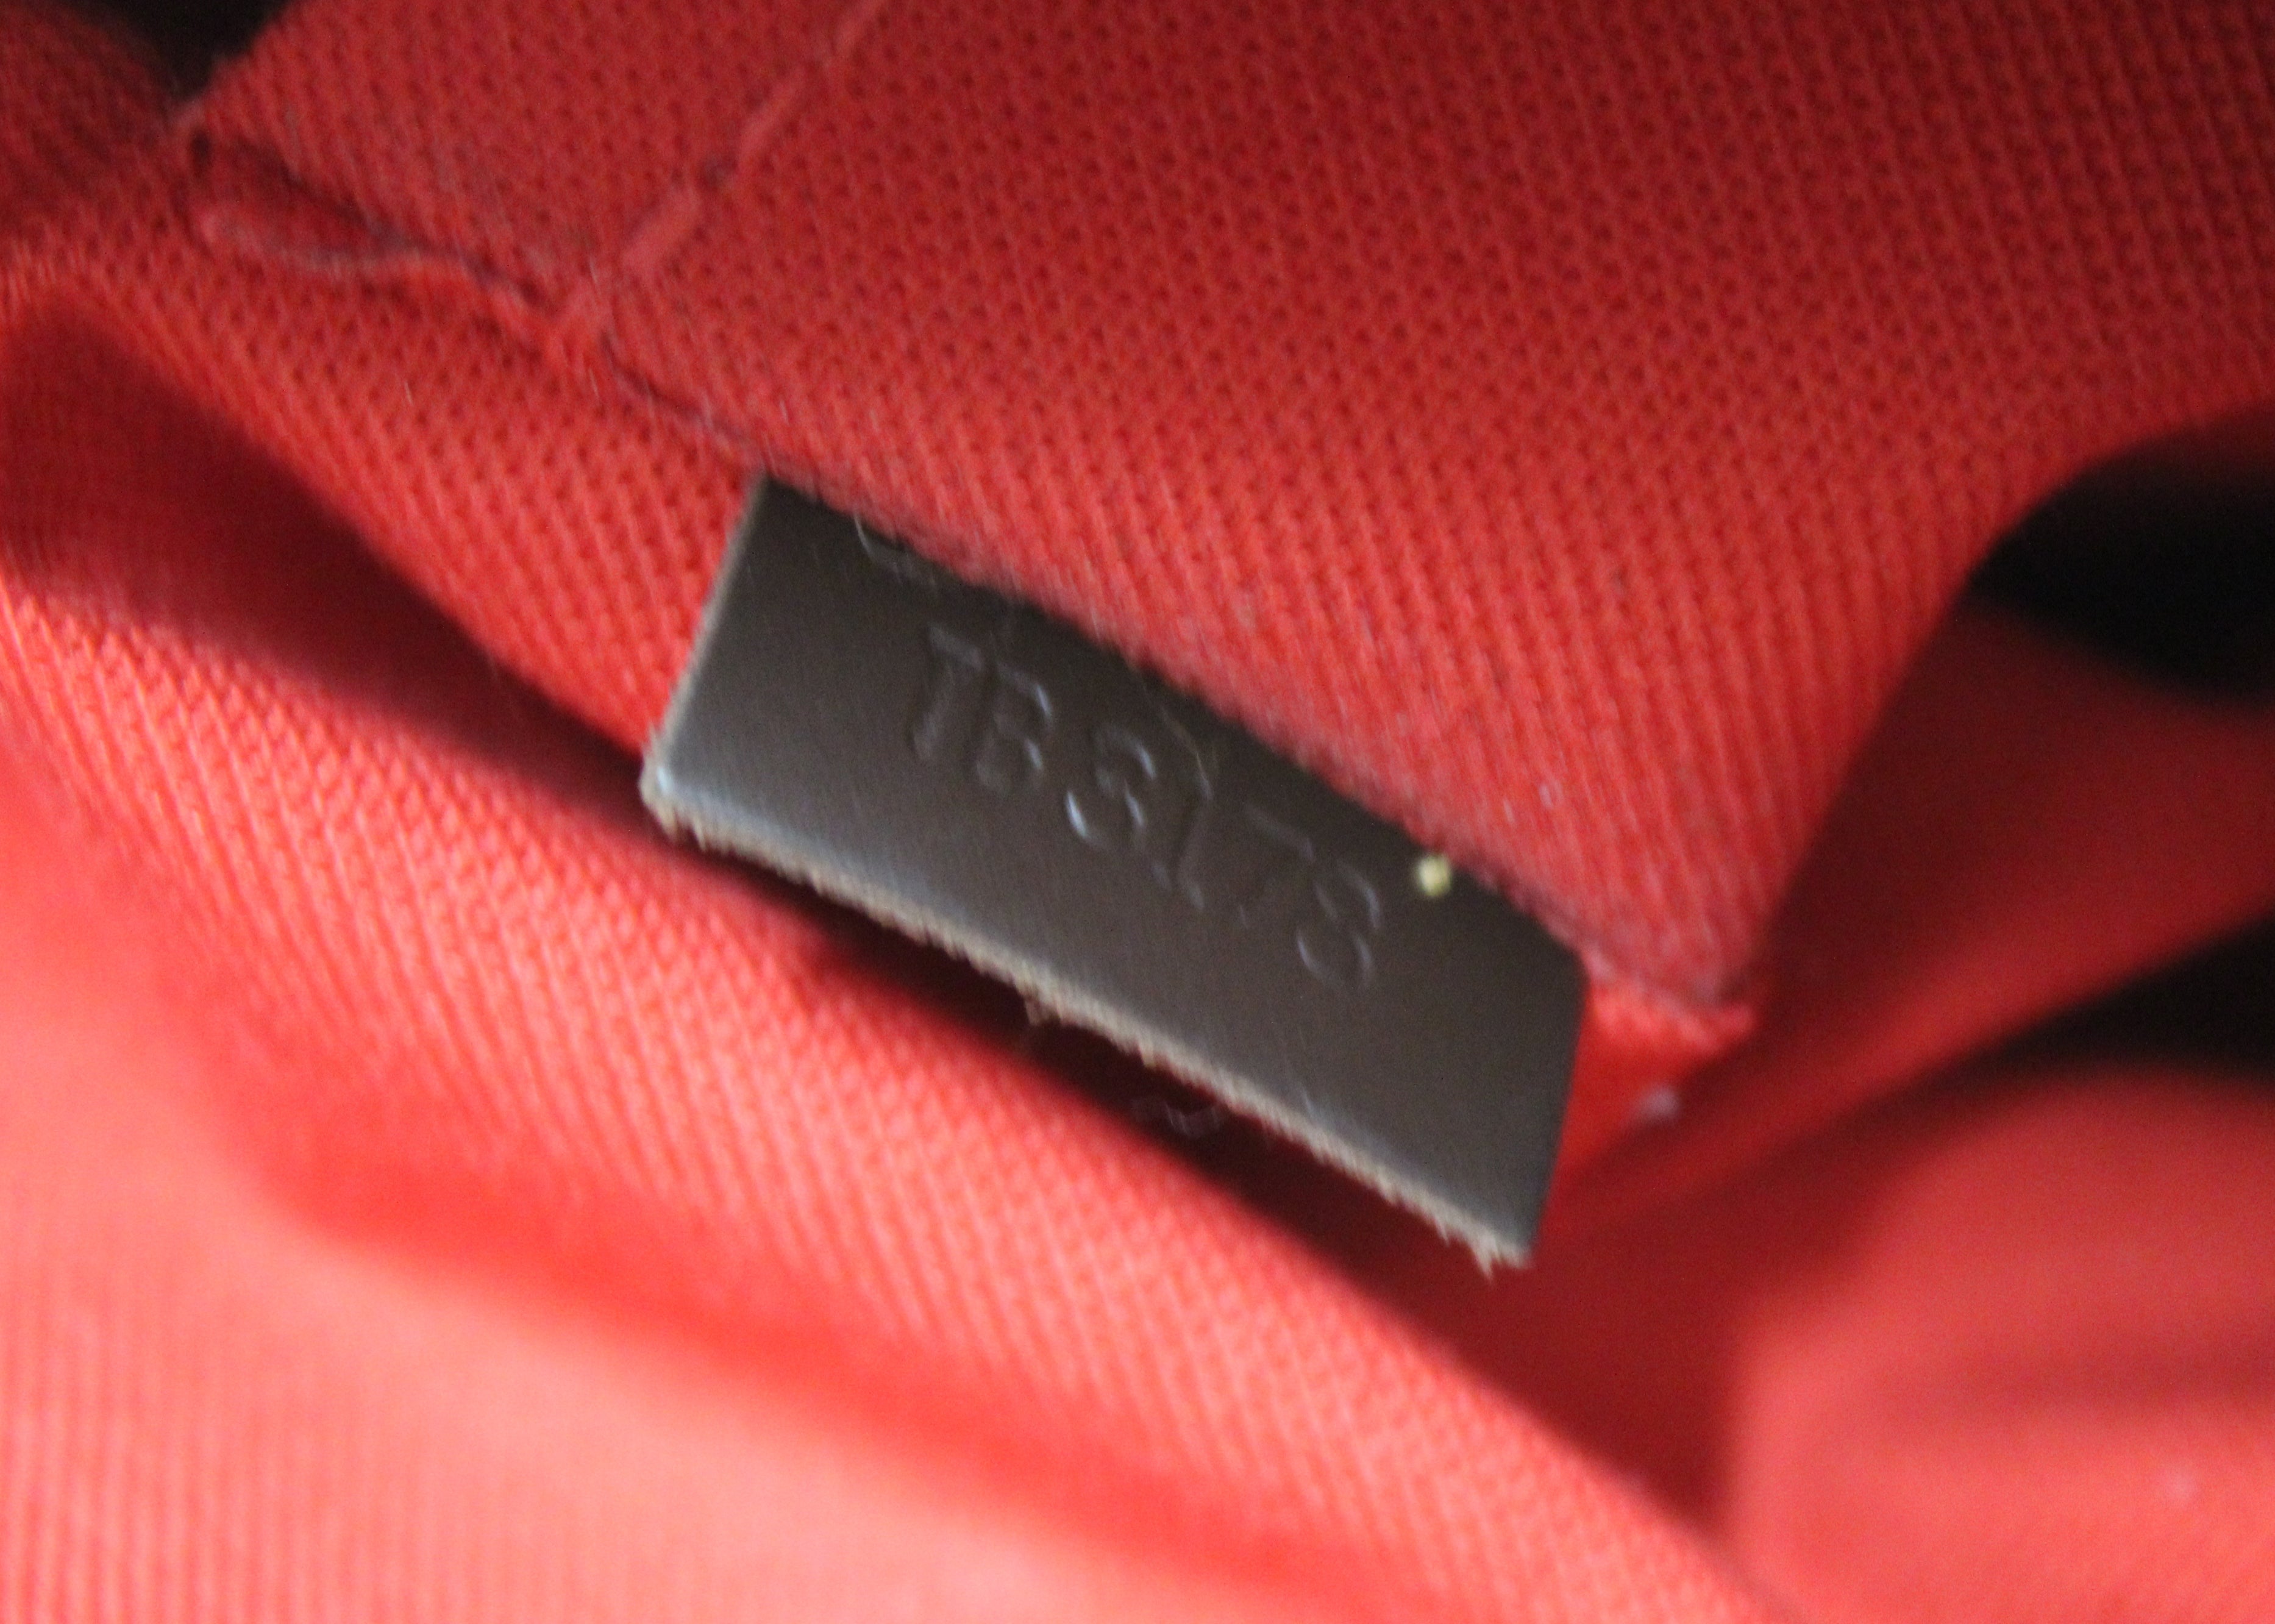 Authentic Louis Vuitton Damier Siena PM Shoulder Messenger Bag With Long Strap